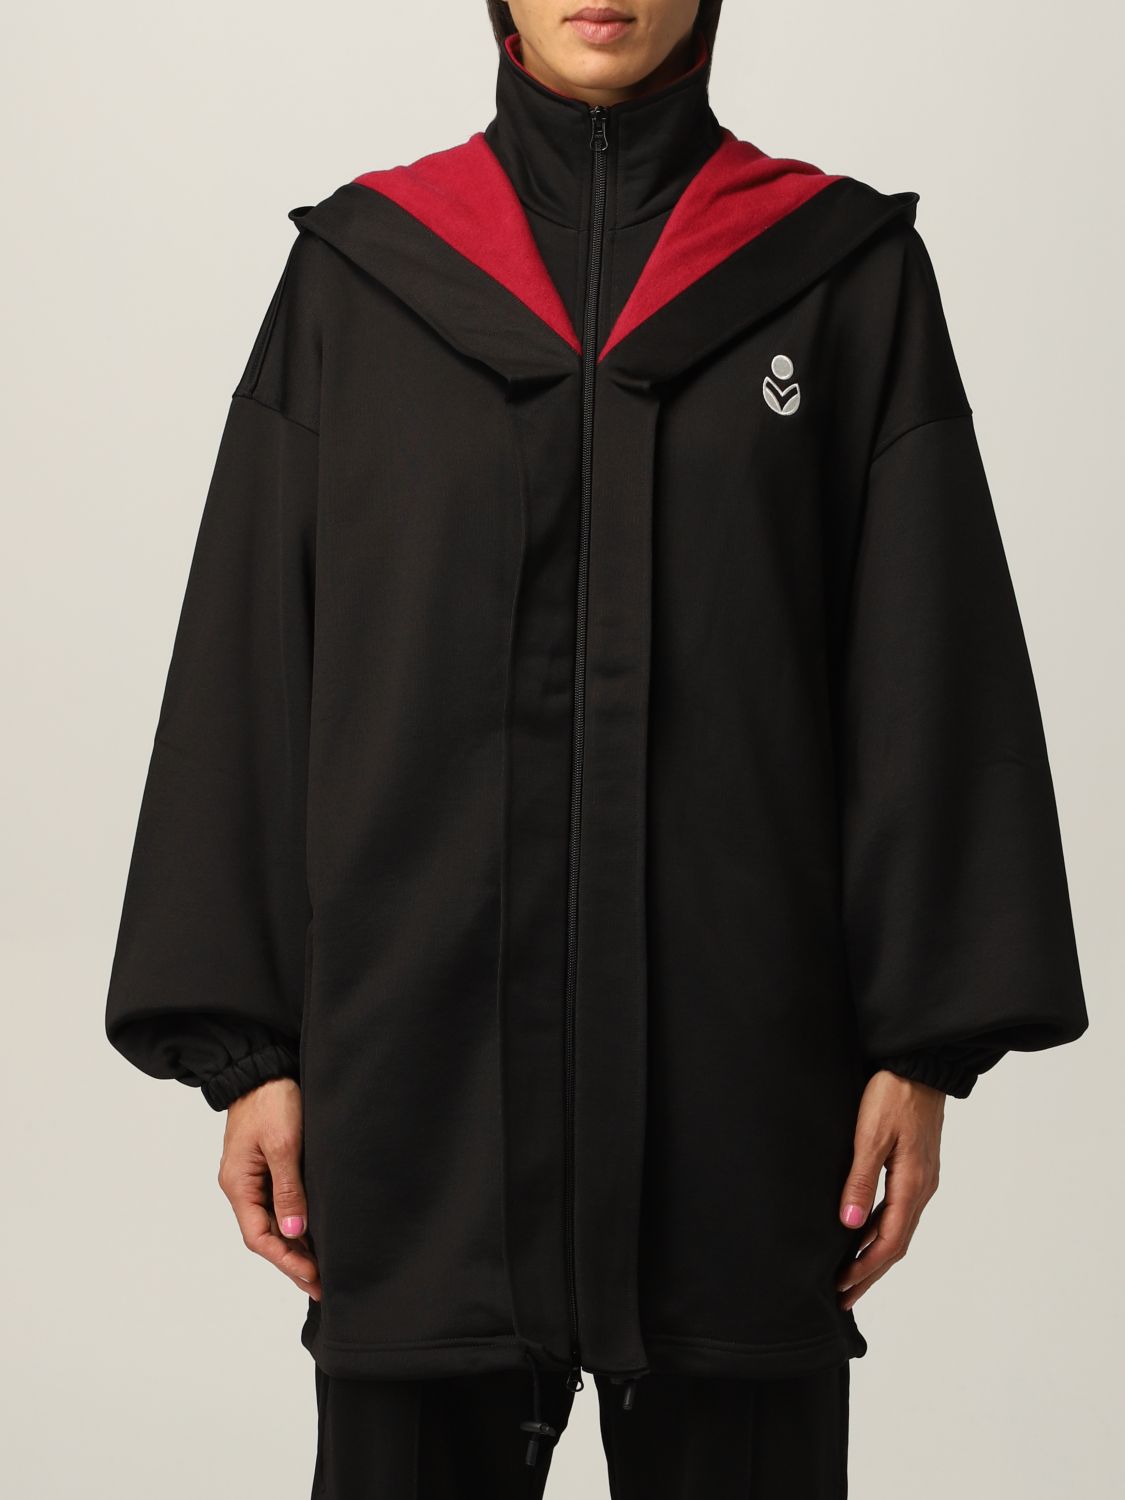 ISABEL MARANT ETOILE: Isla jacket in nylon blend with logo - Black